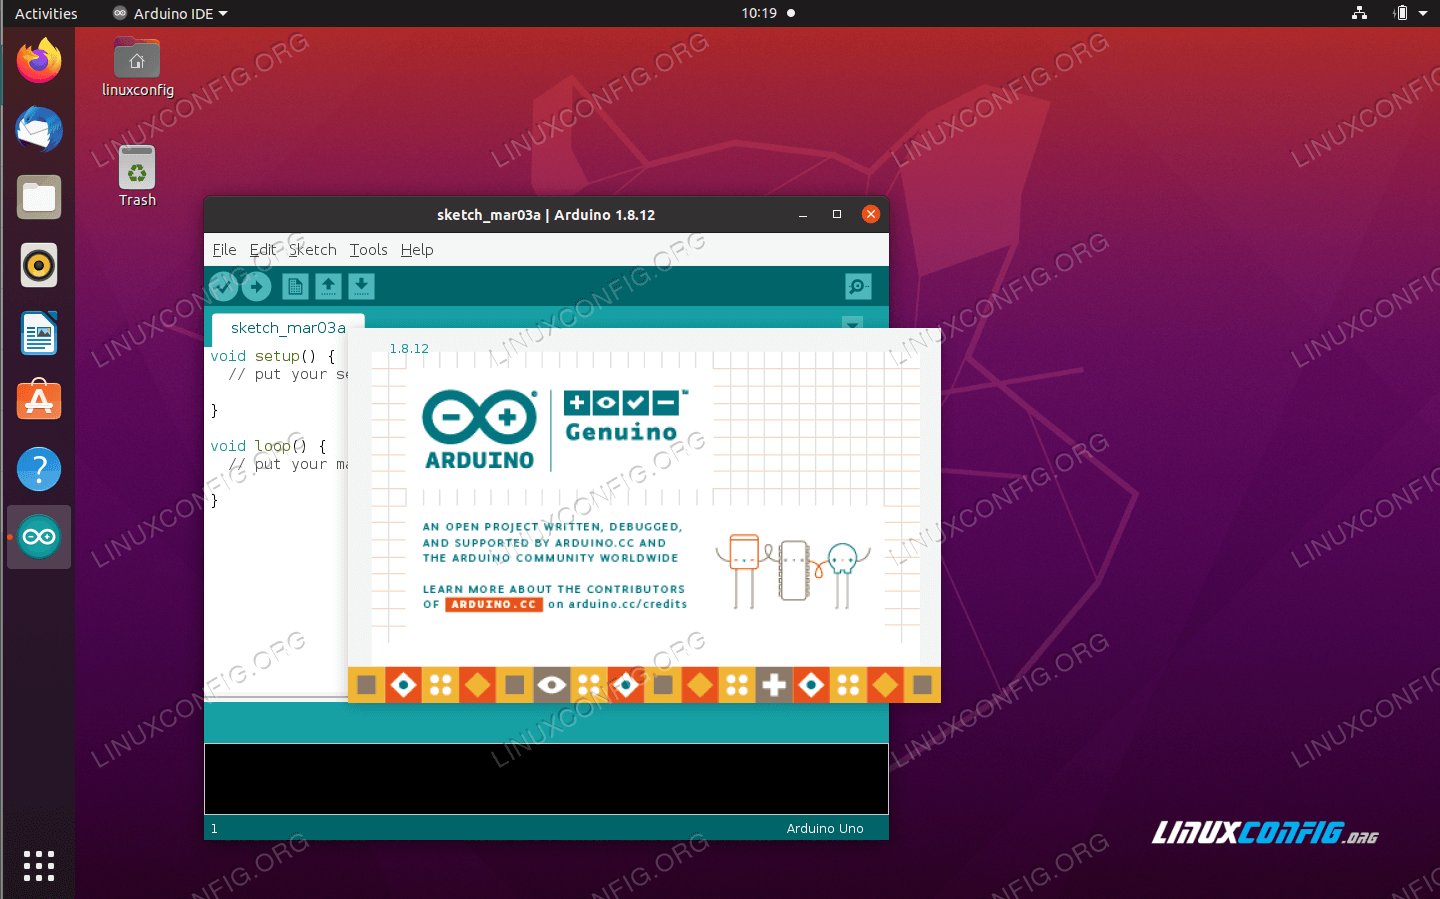 openproject ubuntu